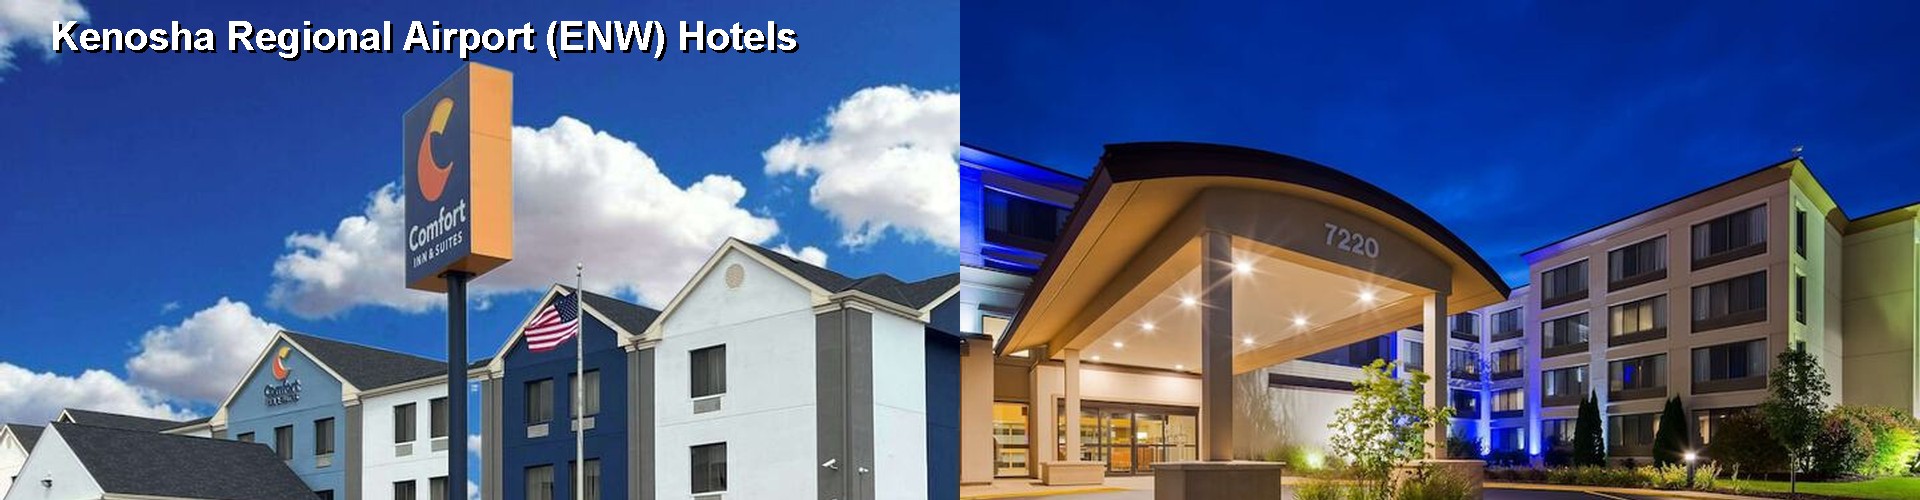 5 Best Hotels near Kenosha Regional Airport (ENW)